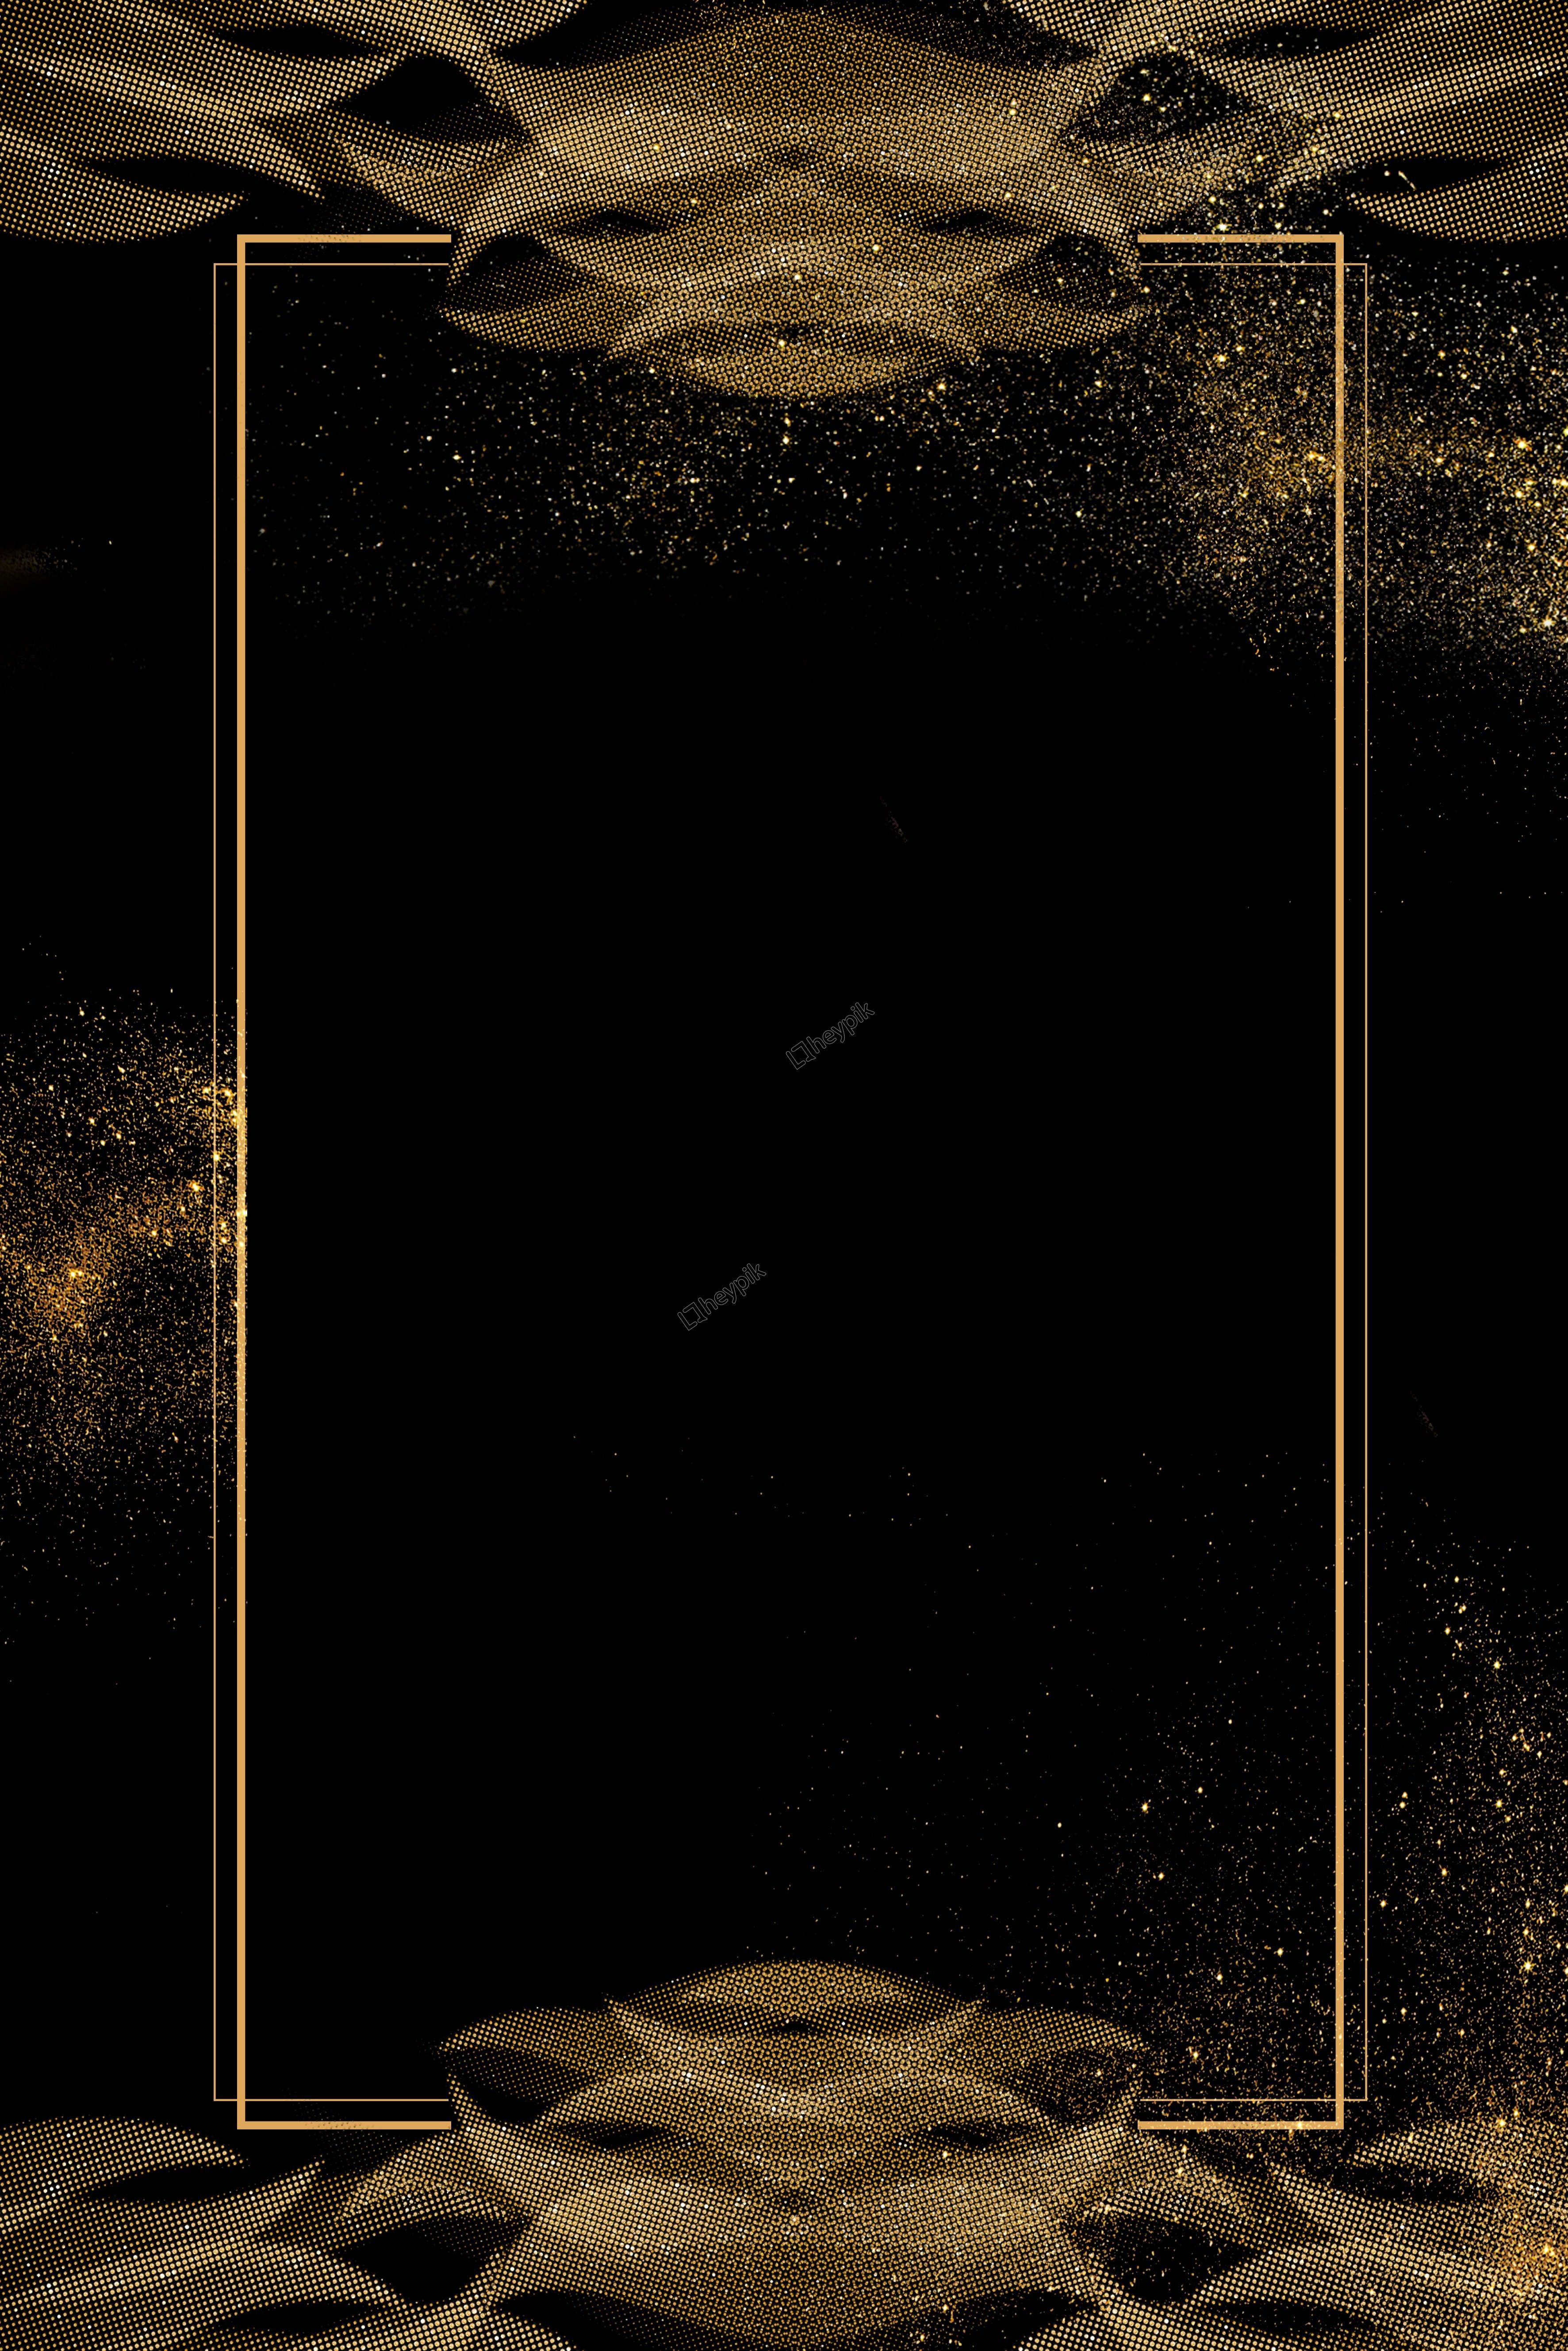 Free download Elegant Black Gold Background Gold and black background